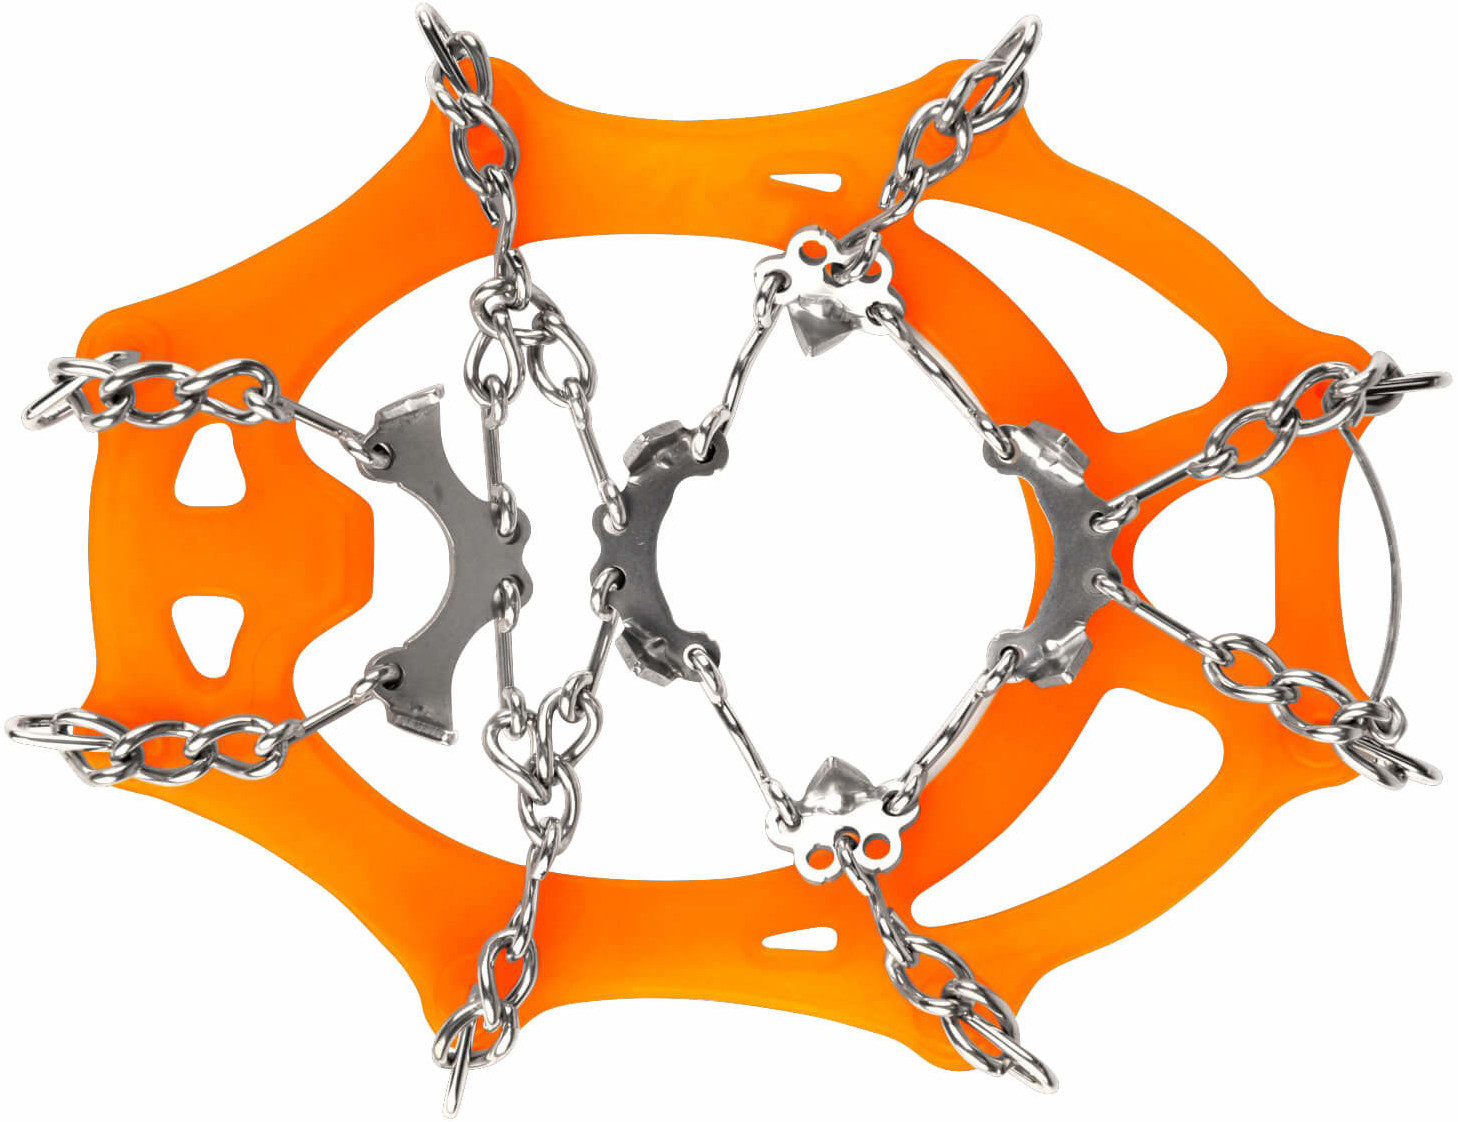 Snowline Chainsen Pro orange ab 31,75 €